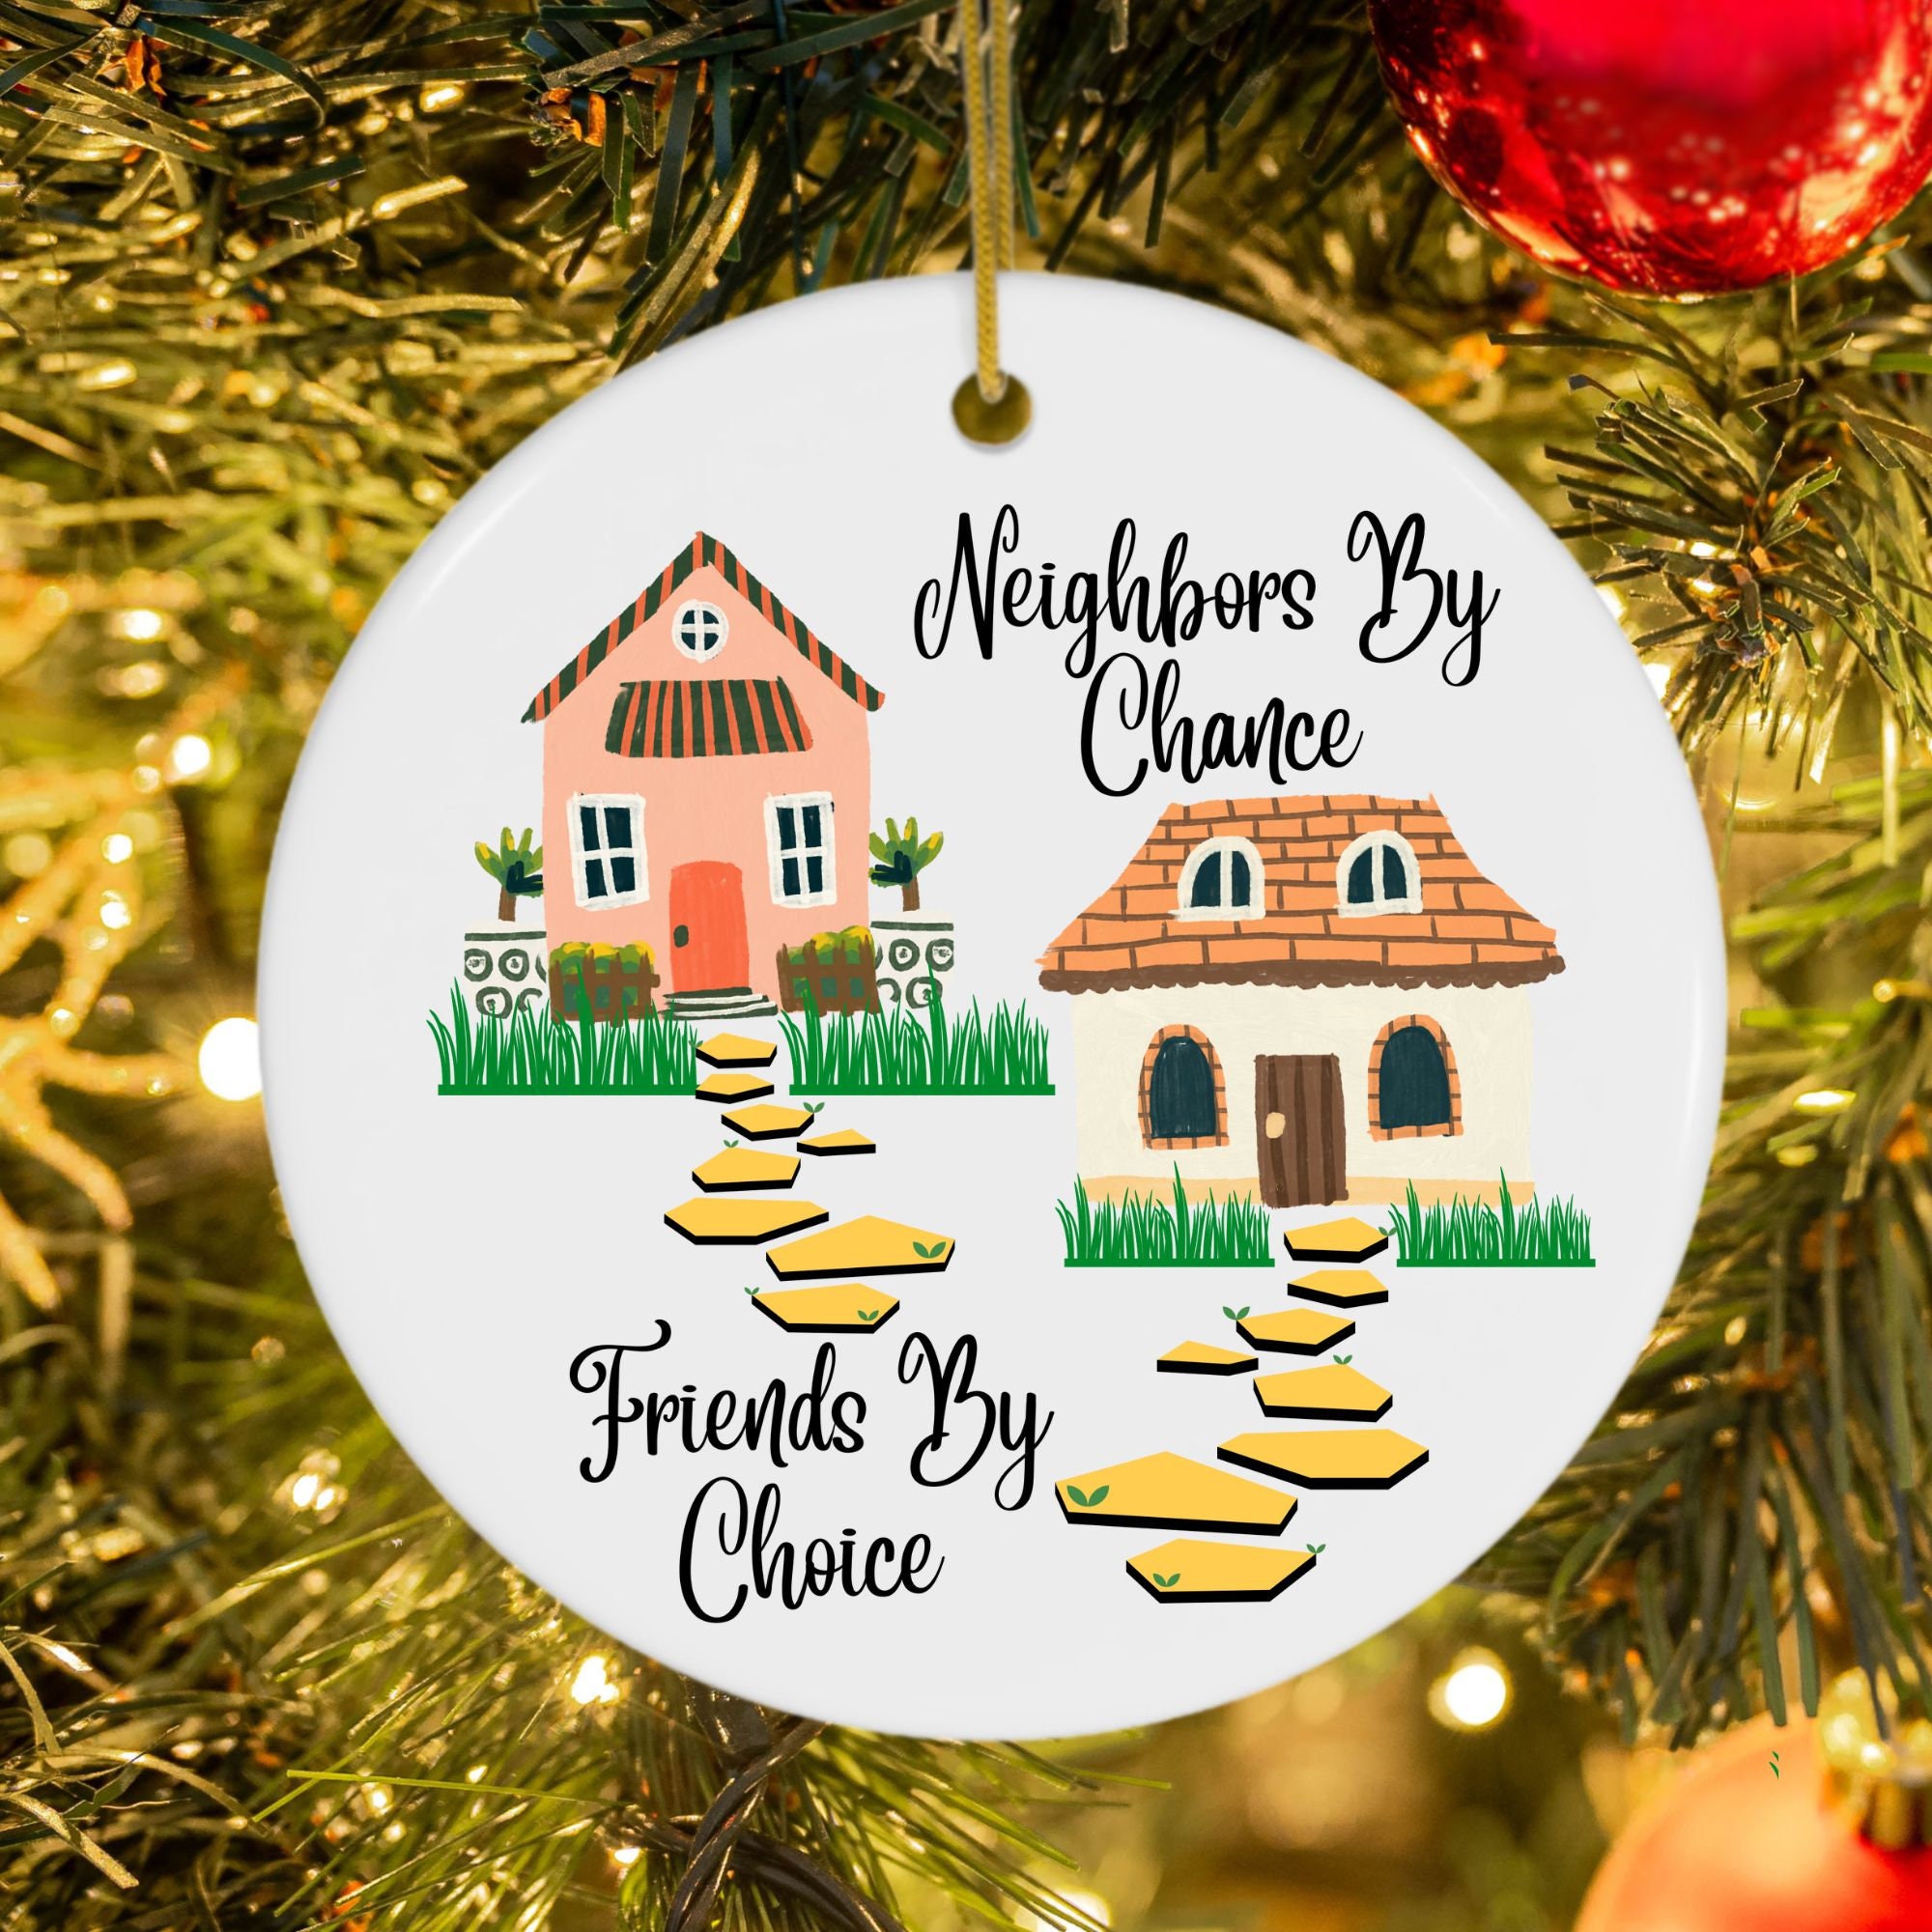 Neighbor Christmas Ornament Neighbor Appreciation Neighbors by Chance  Friends by Choice Bulk Neighbor Christmas Gifts Neighbor Gift 